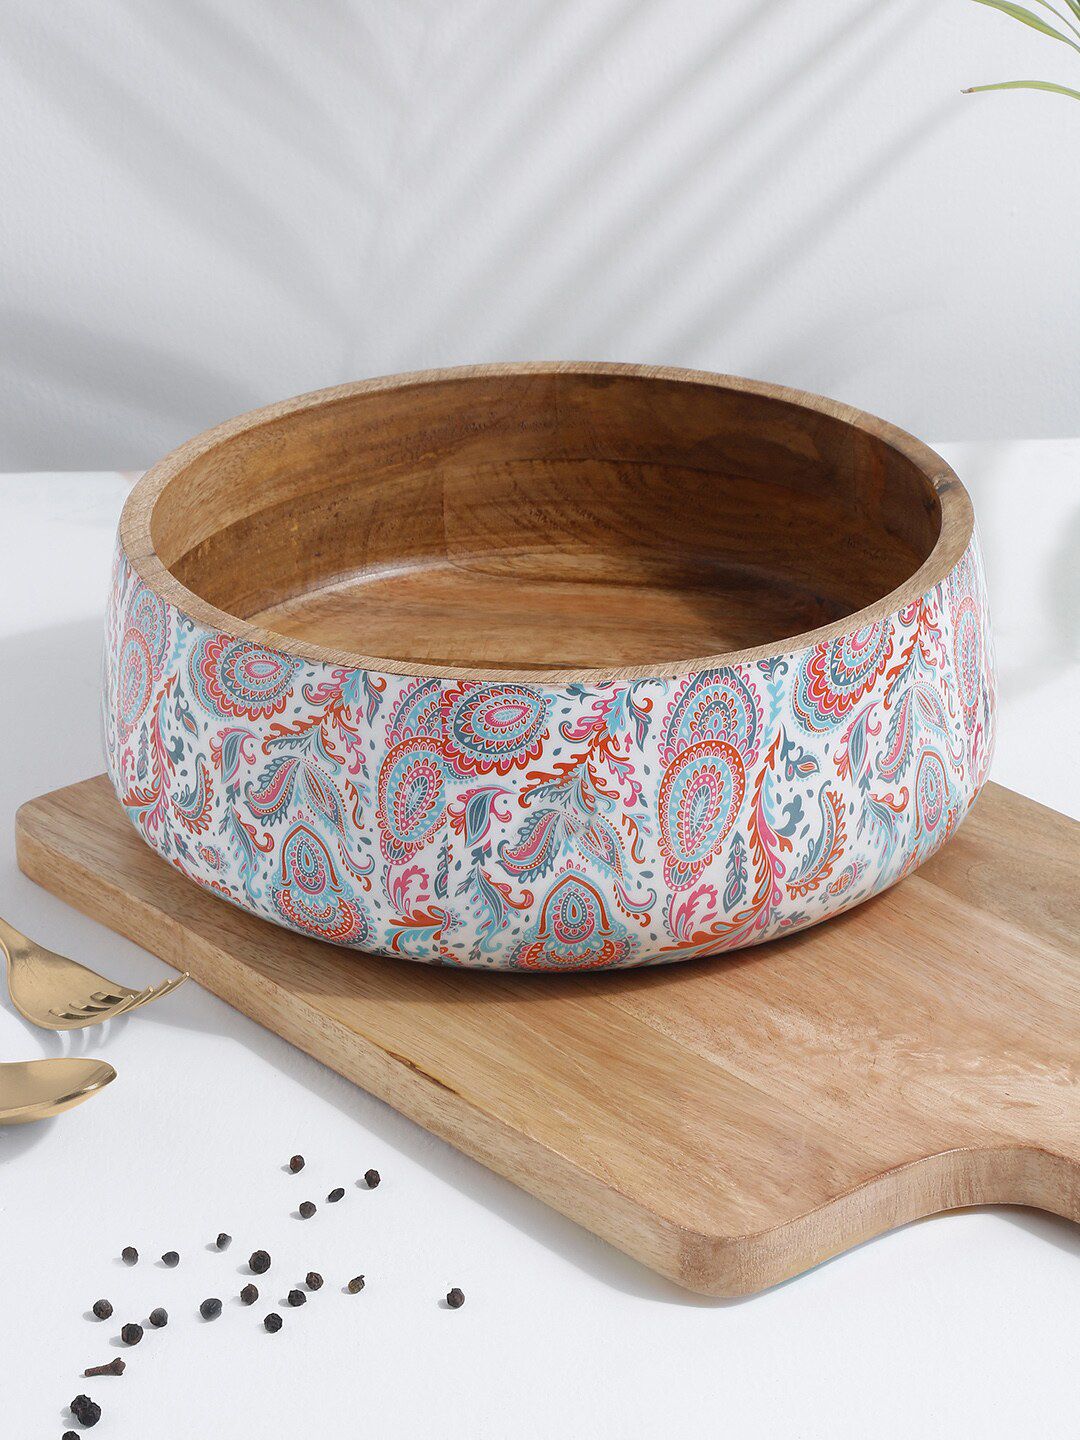 EK BY EKTA KAPOOR Unisex White & Pink Enamel Printed Wooden Serving Bowl Price in India